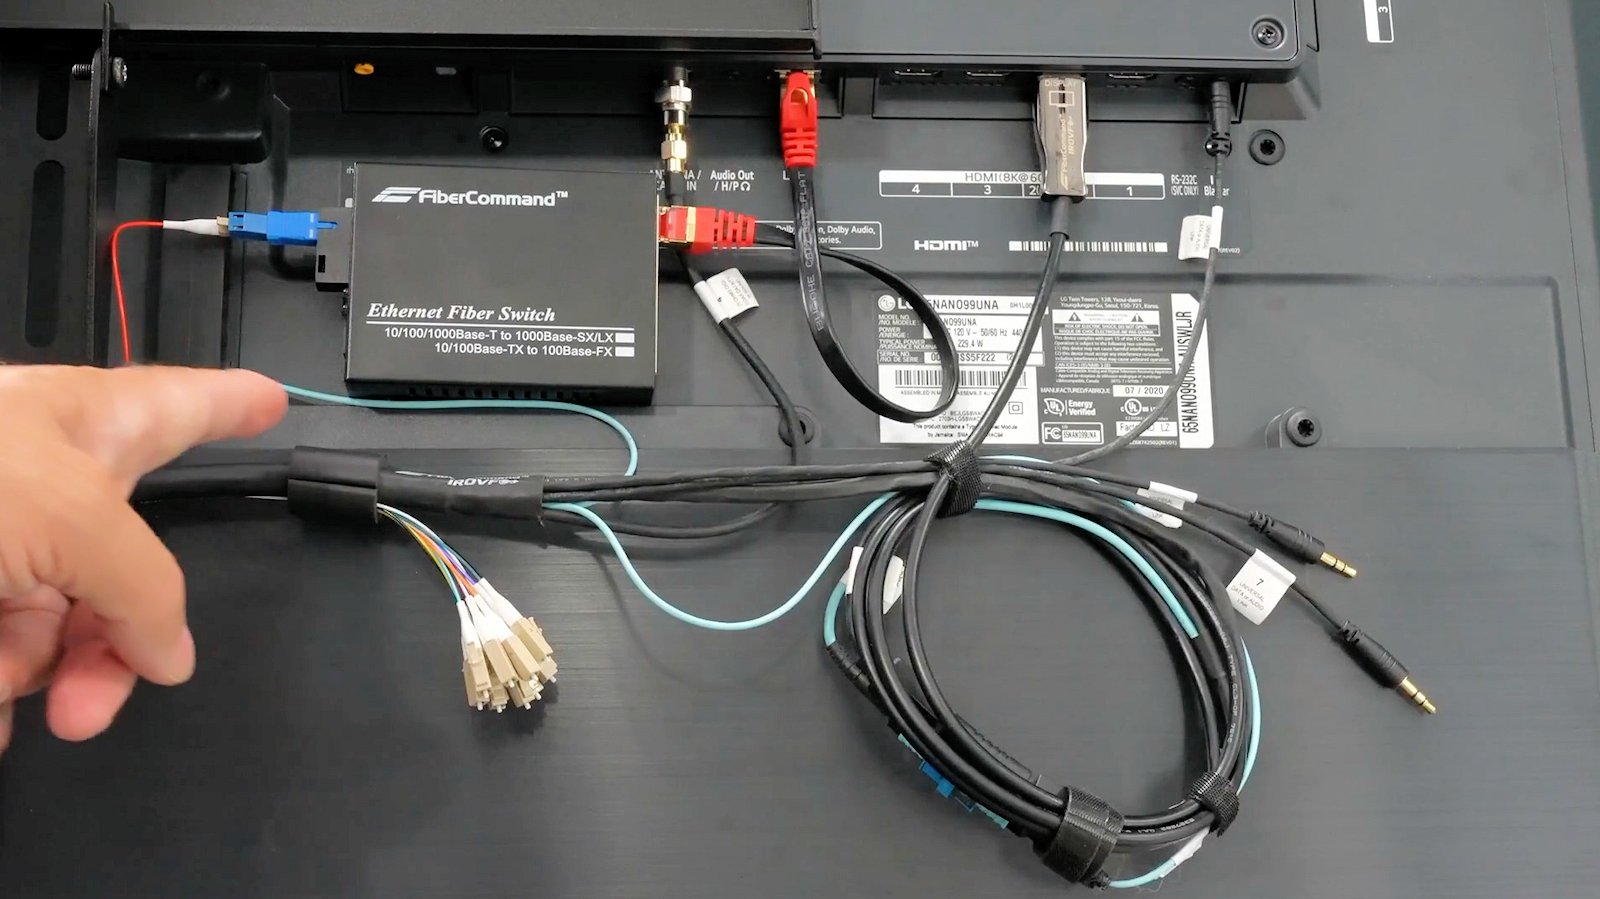 PureFiber® PRO - HDMI | Prætermineret hybridfiberkabel med HDMI 2.1 8k